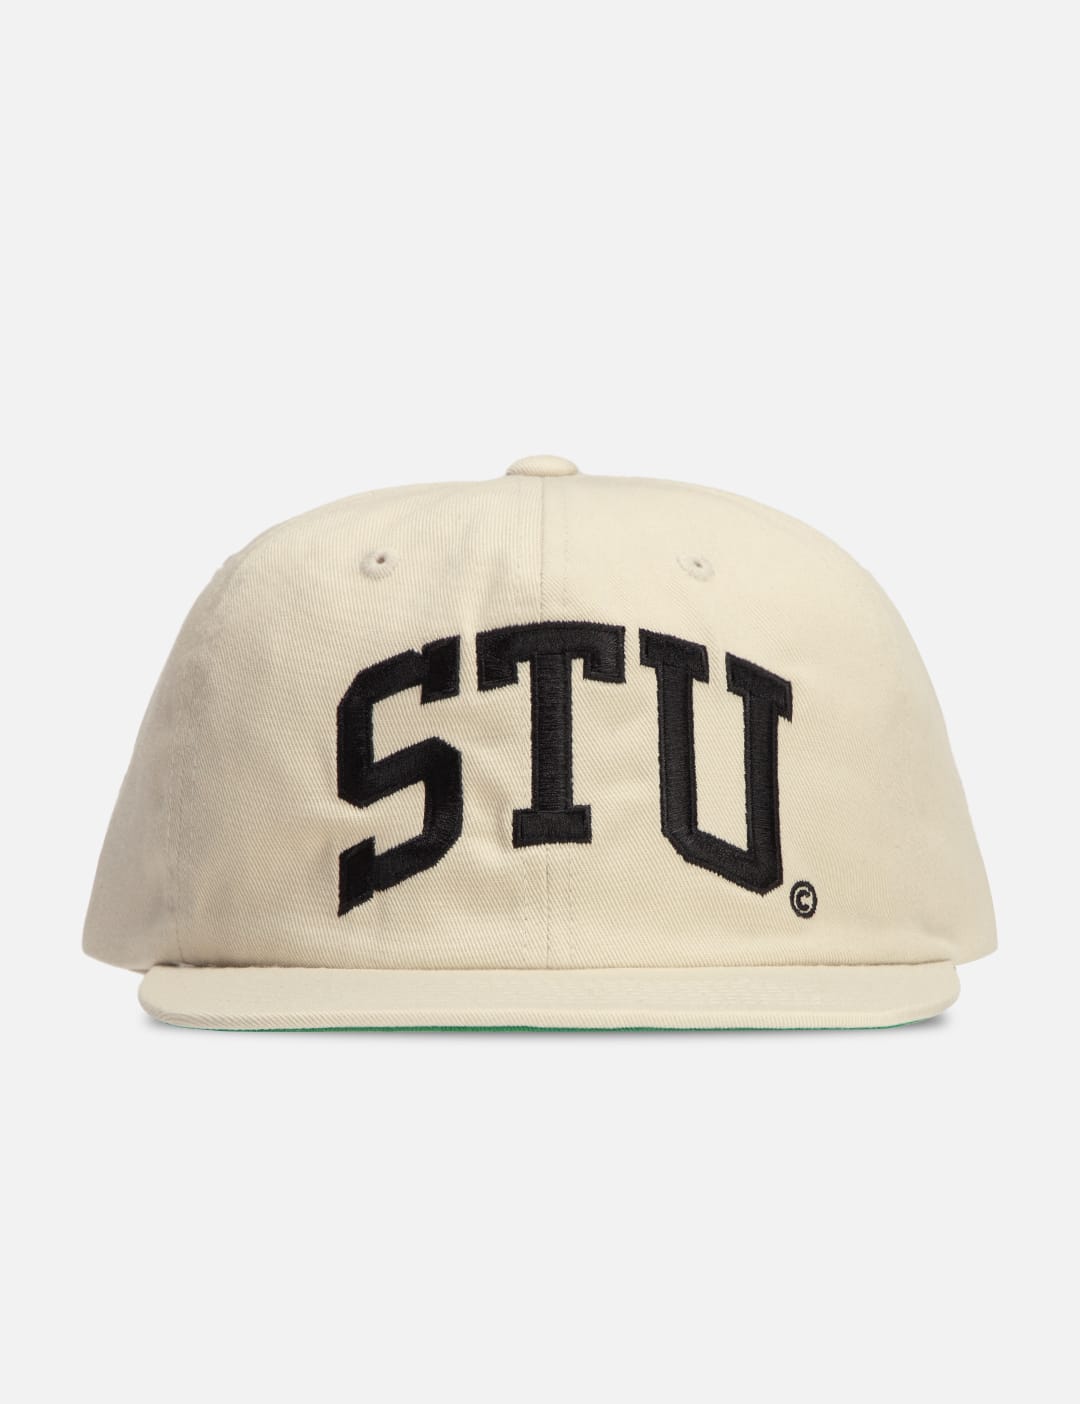 Stüssy - STU Arch Strapback Cap | HBX - Globally Curated Fashion 